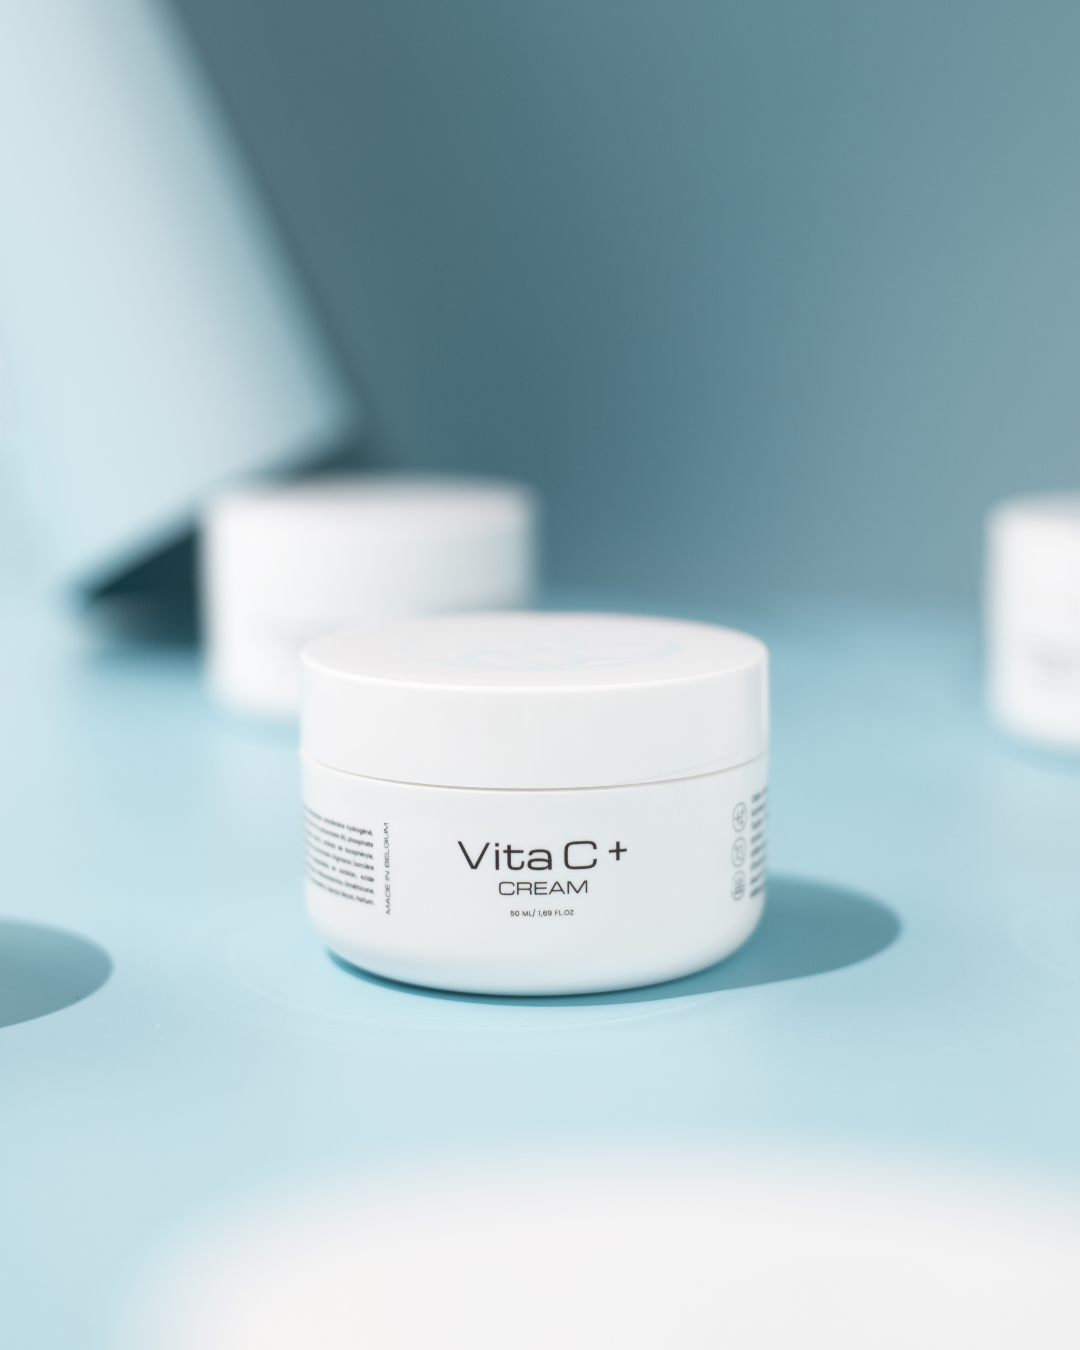 Vita C+ cream